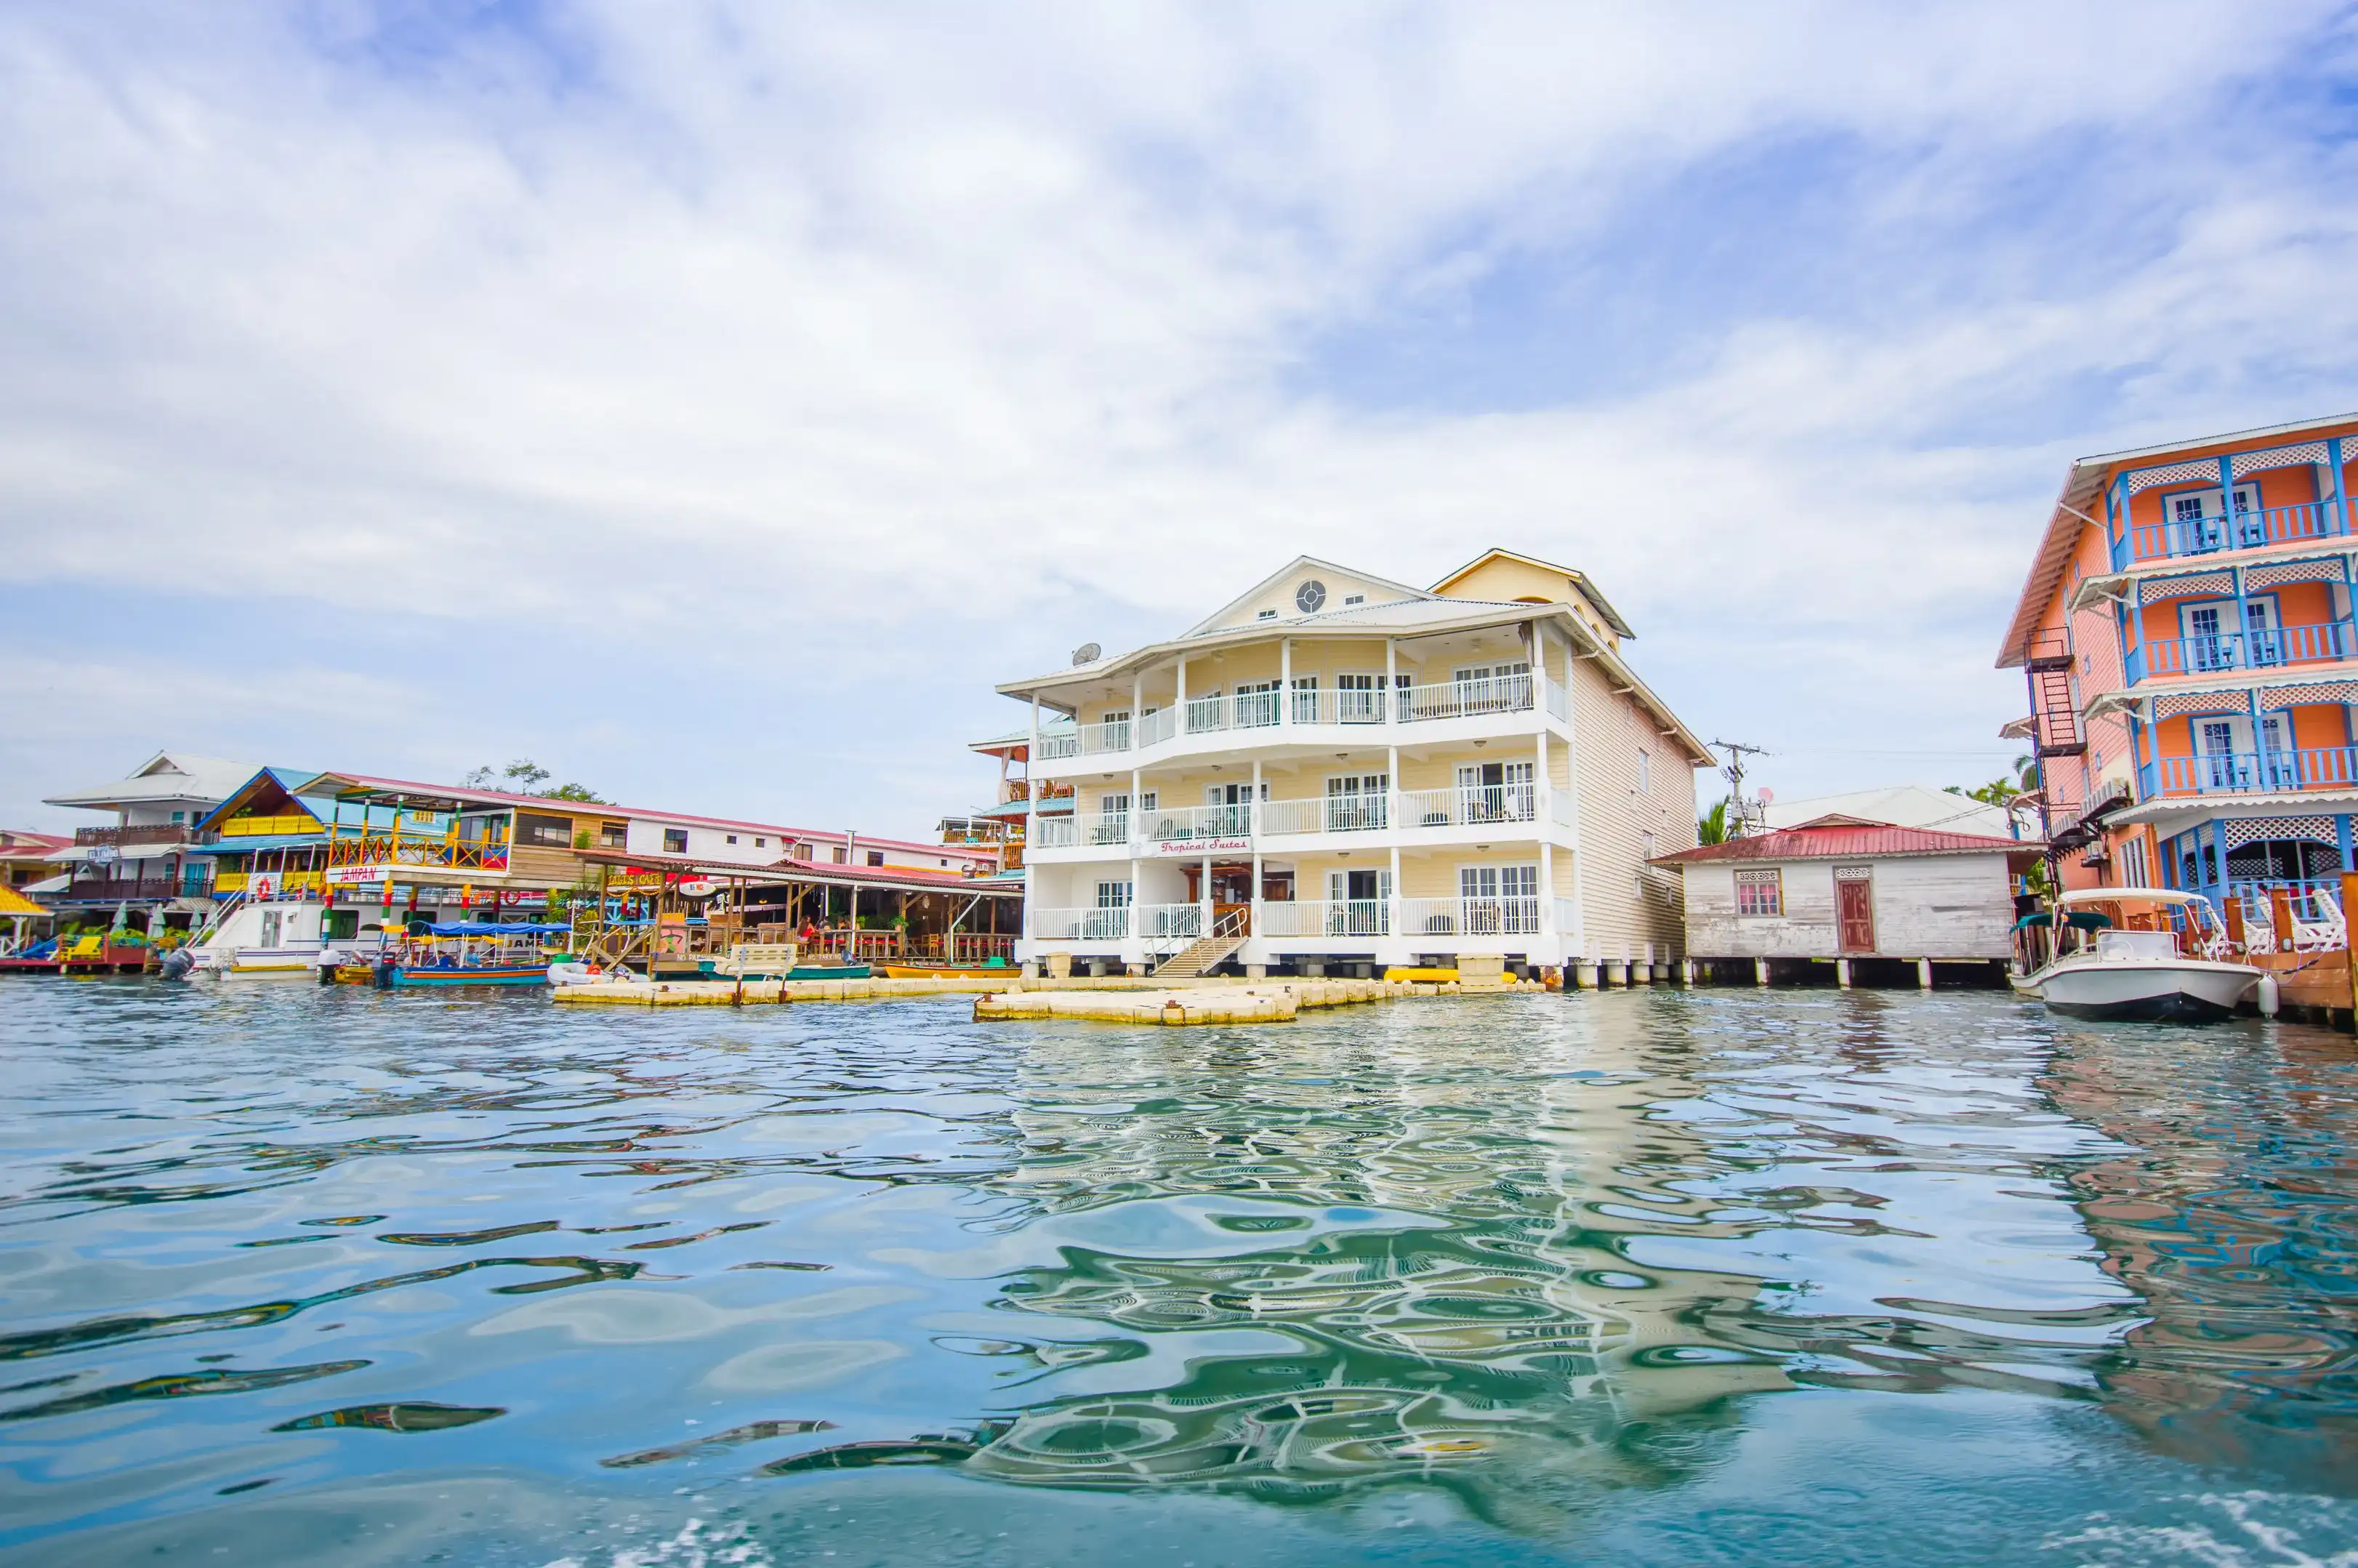 Provincia de Colón hotels. Best hotels in Provincia de Colón, Panama